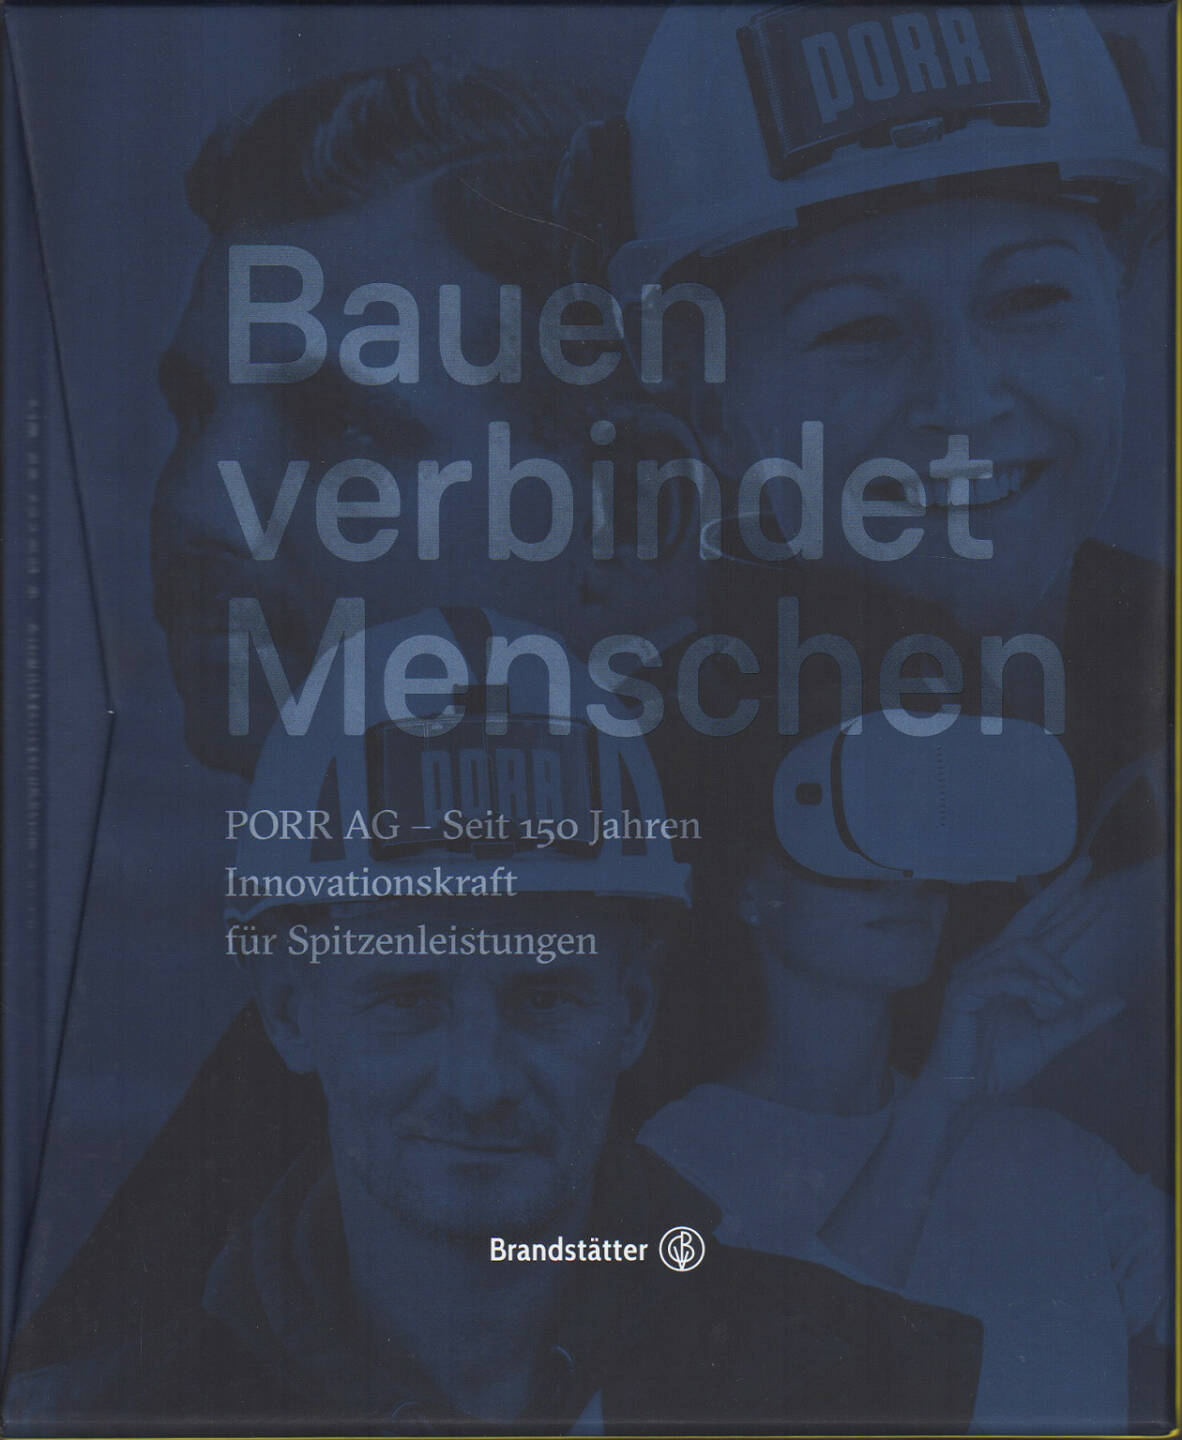 Bauen verbindet Menschen, Manfred Waldenmair (Hrsg.) - https://boerse-social.com/financebooks/show/bauen_verbindet_menschen_manfred_waldenmair_hrsg